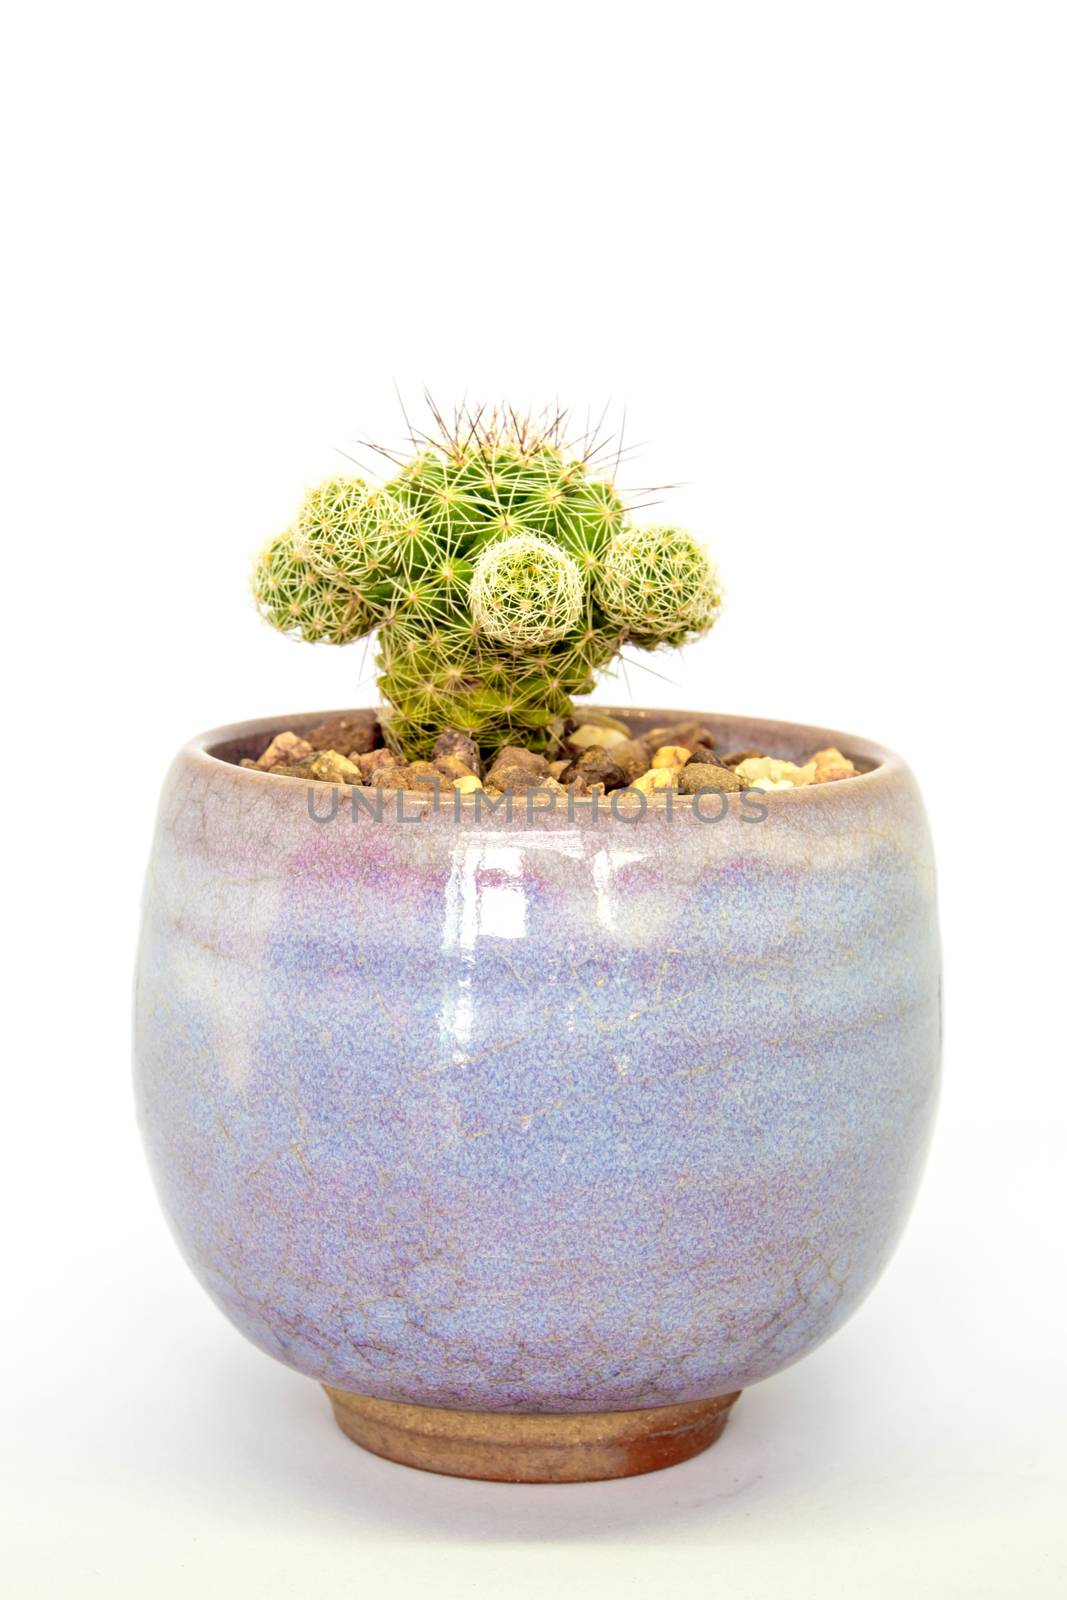 Cactus succulent plant, freshness cactus mammillaria gracilis in the ceramic pot